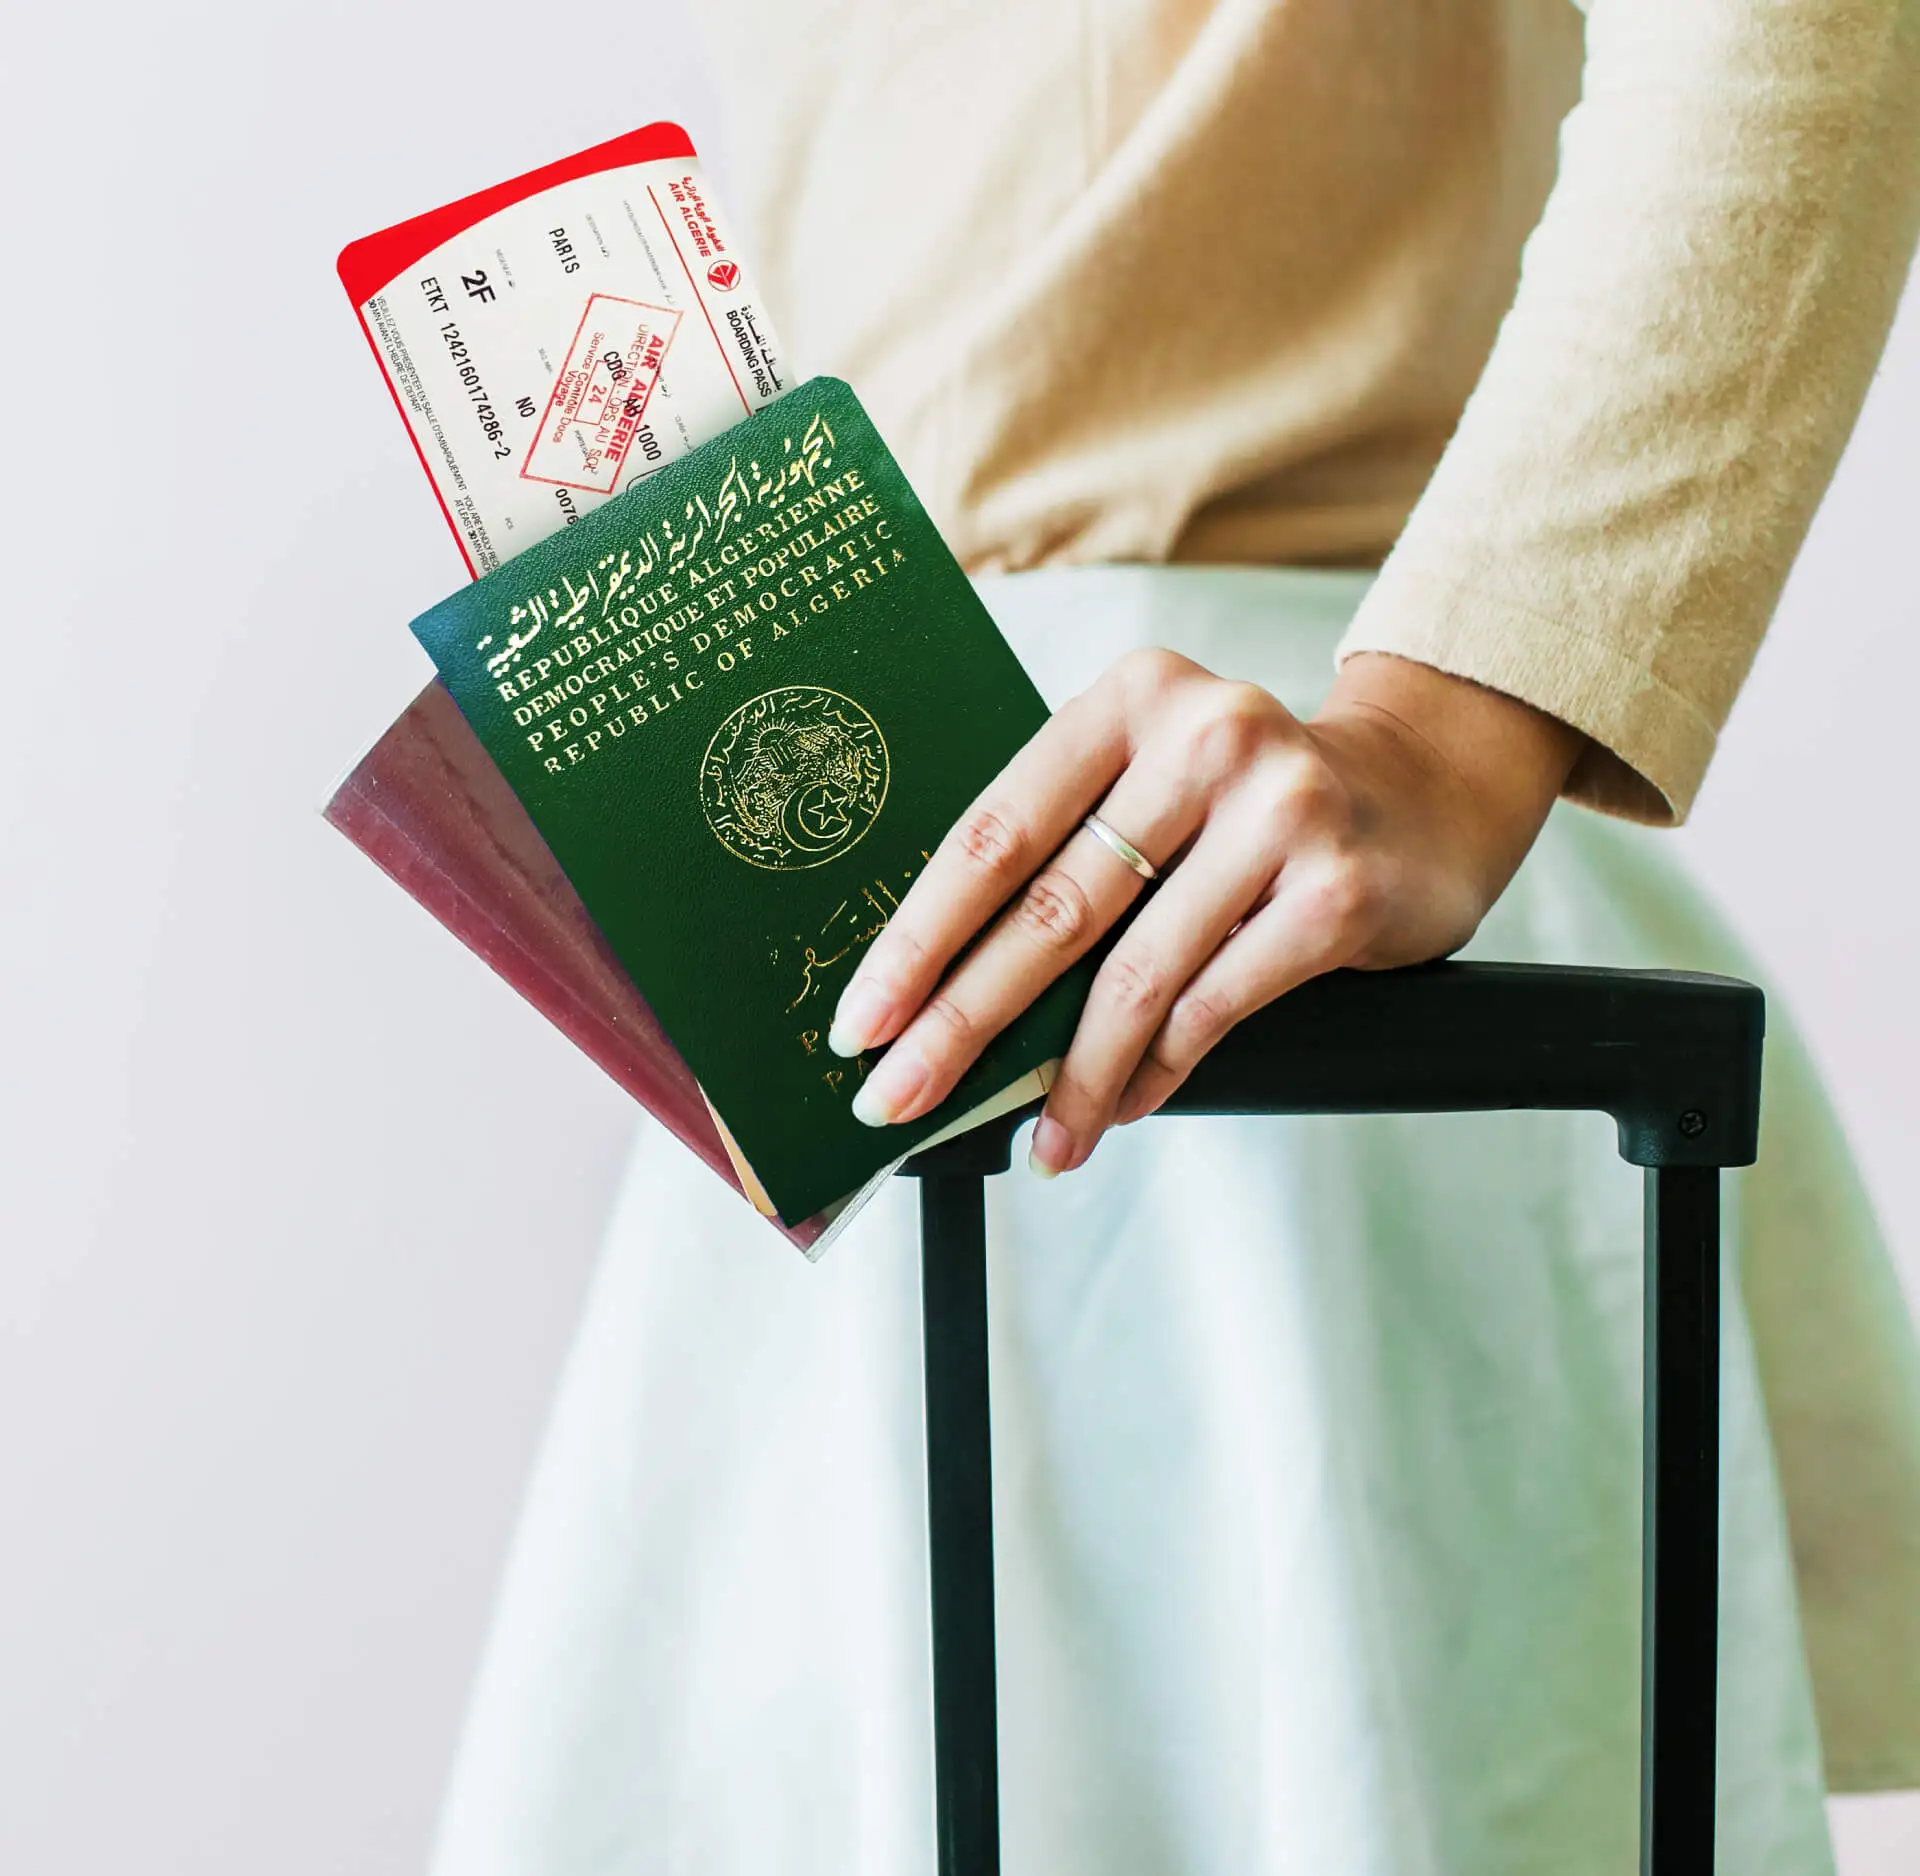 Passeport et documents pour voyager avec un enfant